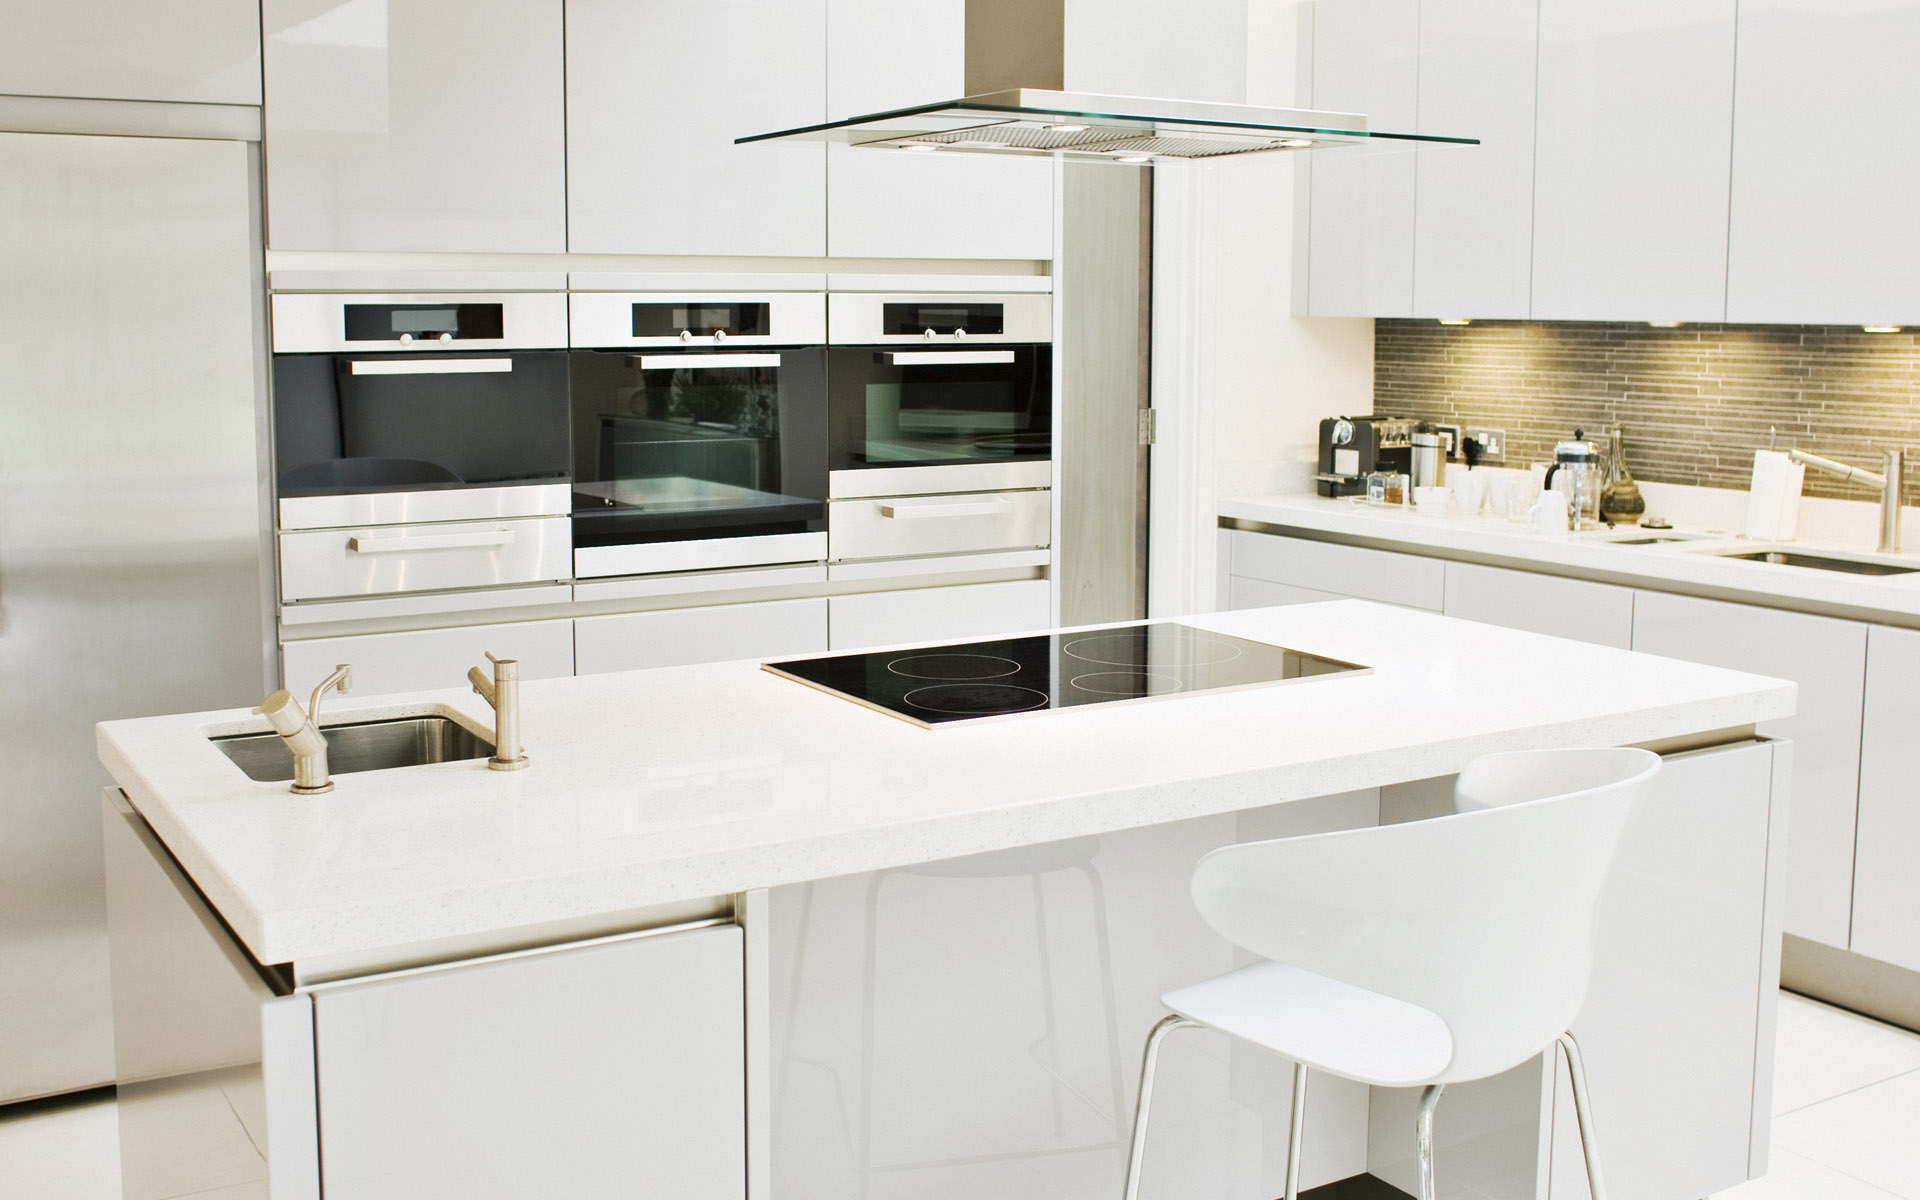 Led işiklı özgün tasarım mutfak dolabı modelleri